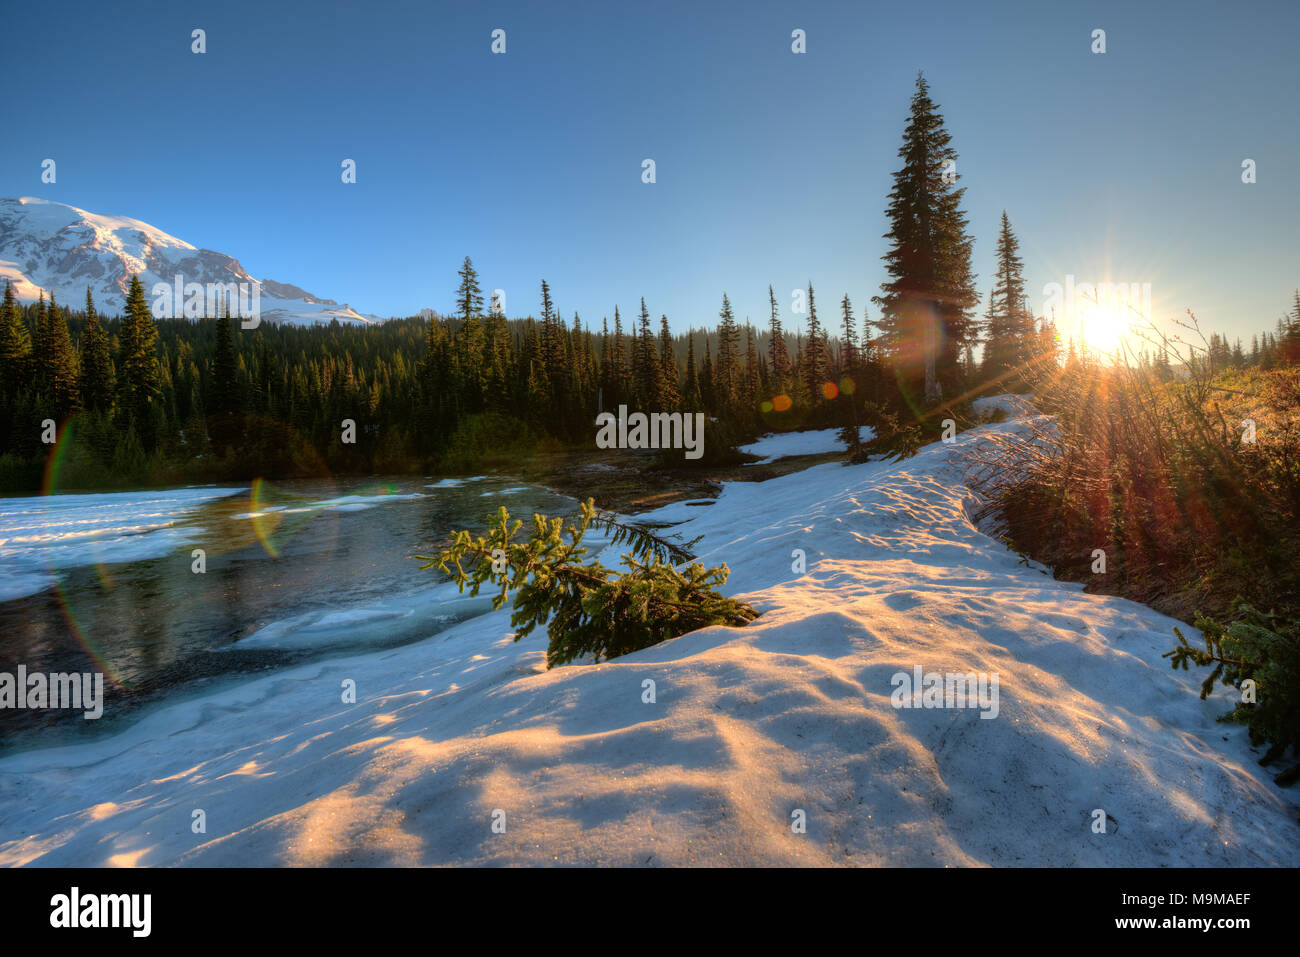 Frozen Reflection Lake at sunrise, Mount Rainier National Park, Washington State, USA Stock Photo